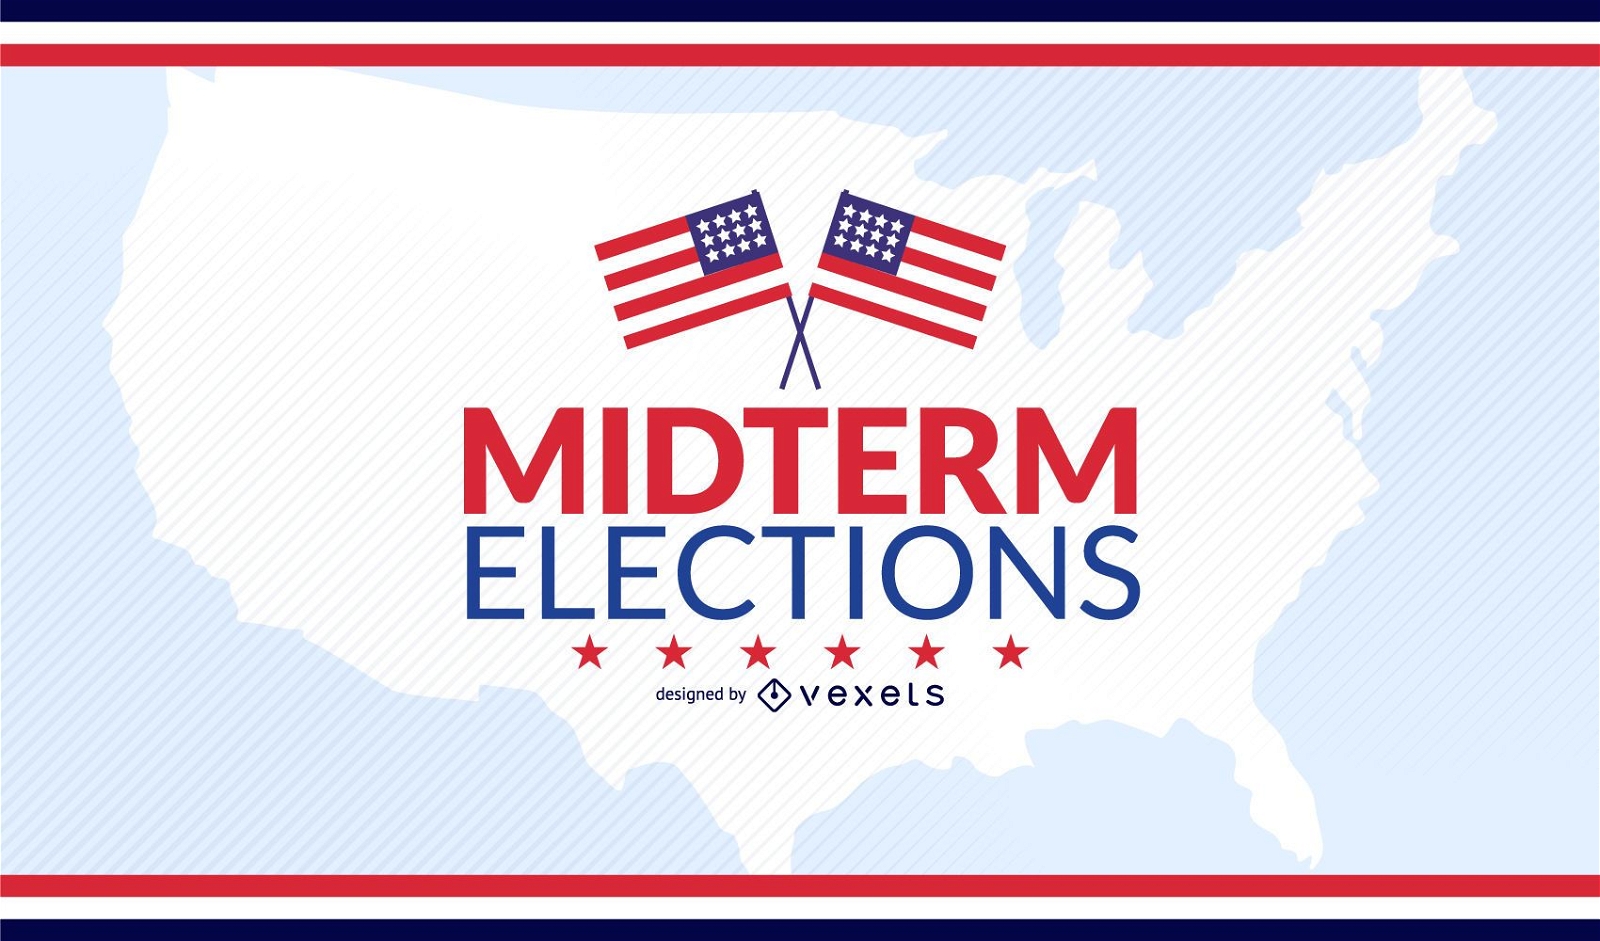 USA midterm elections design